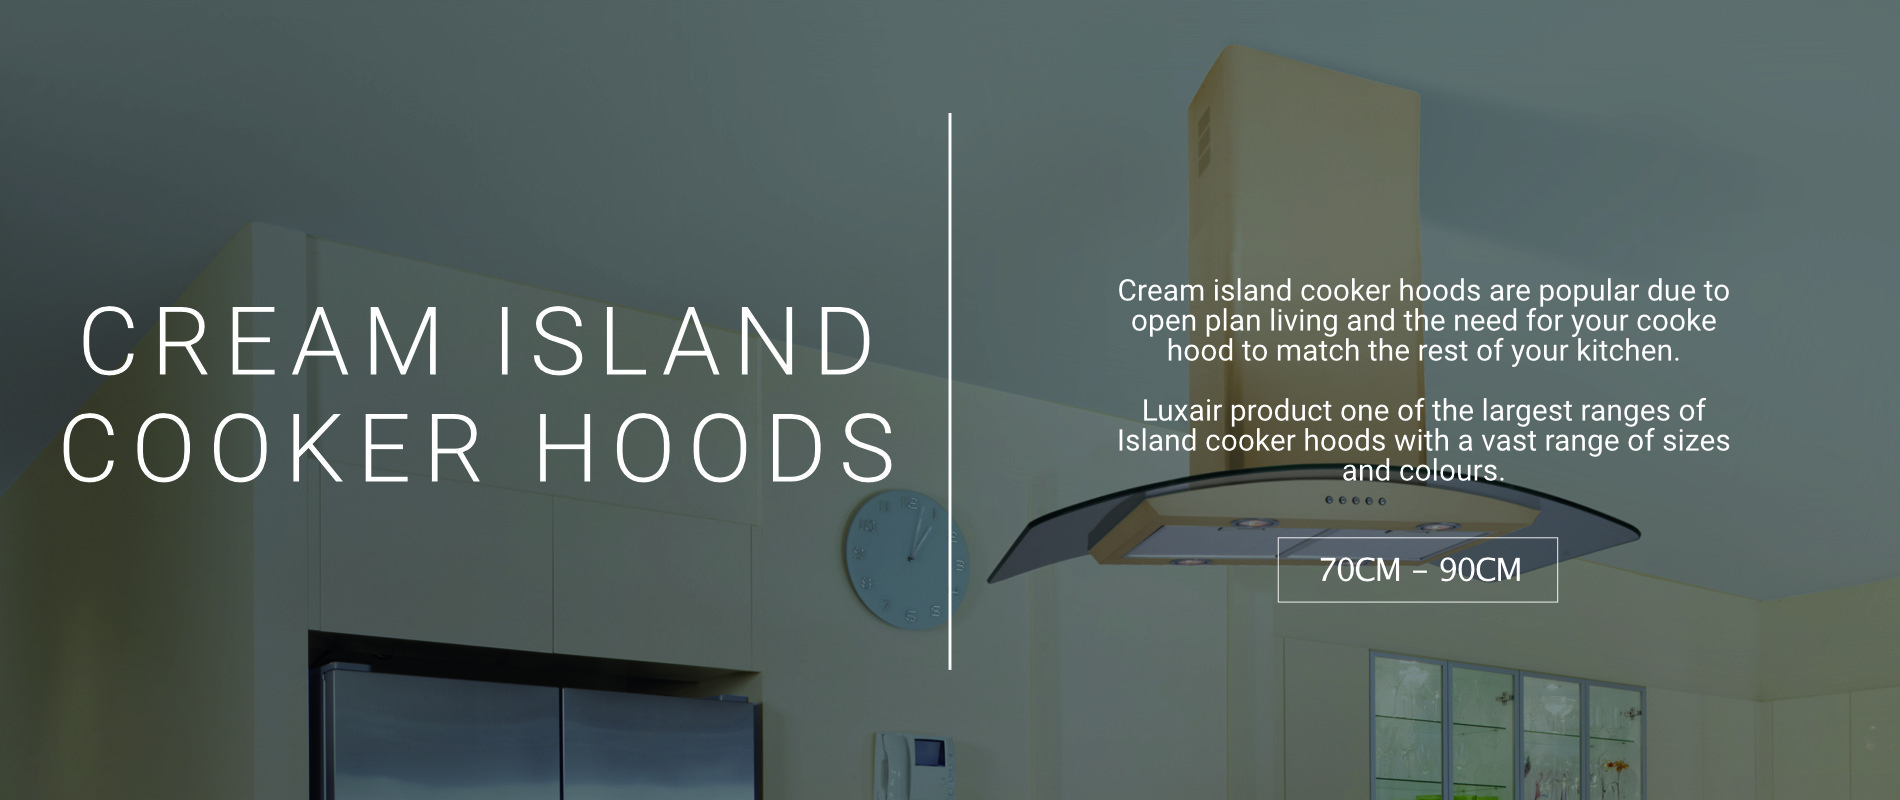 Cream Island Cooker Hoods